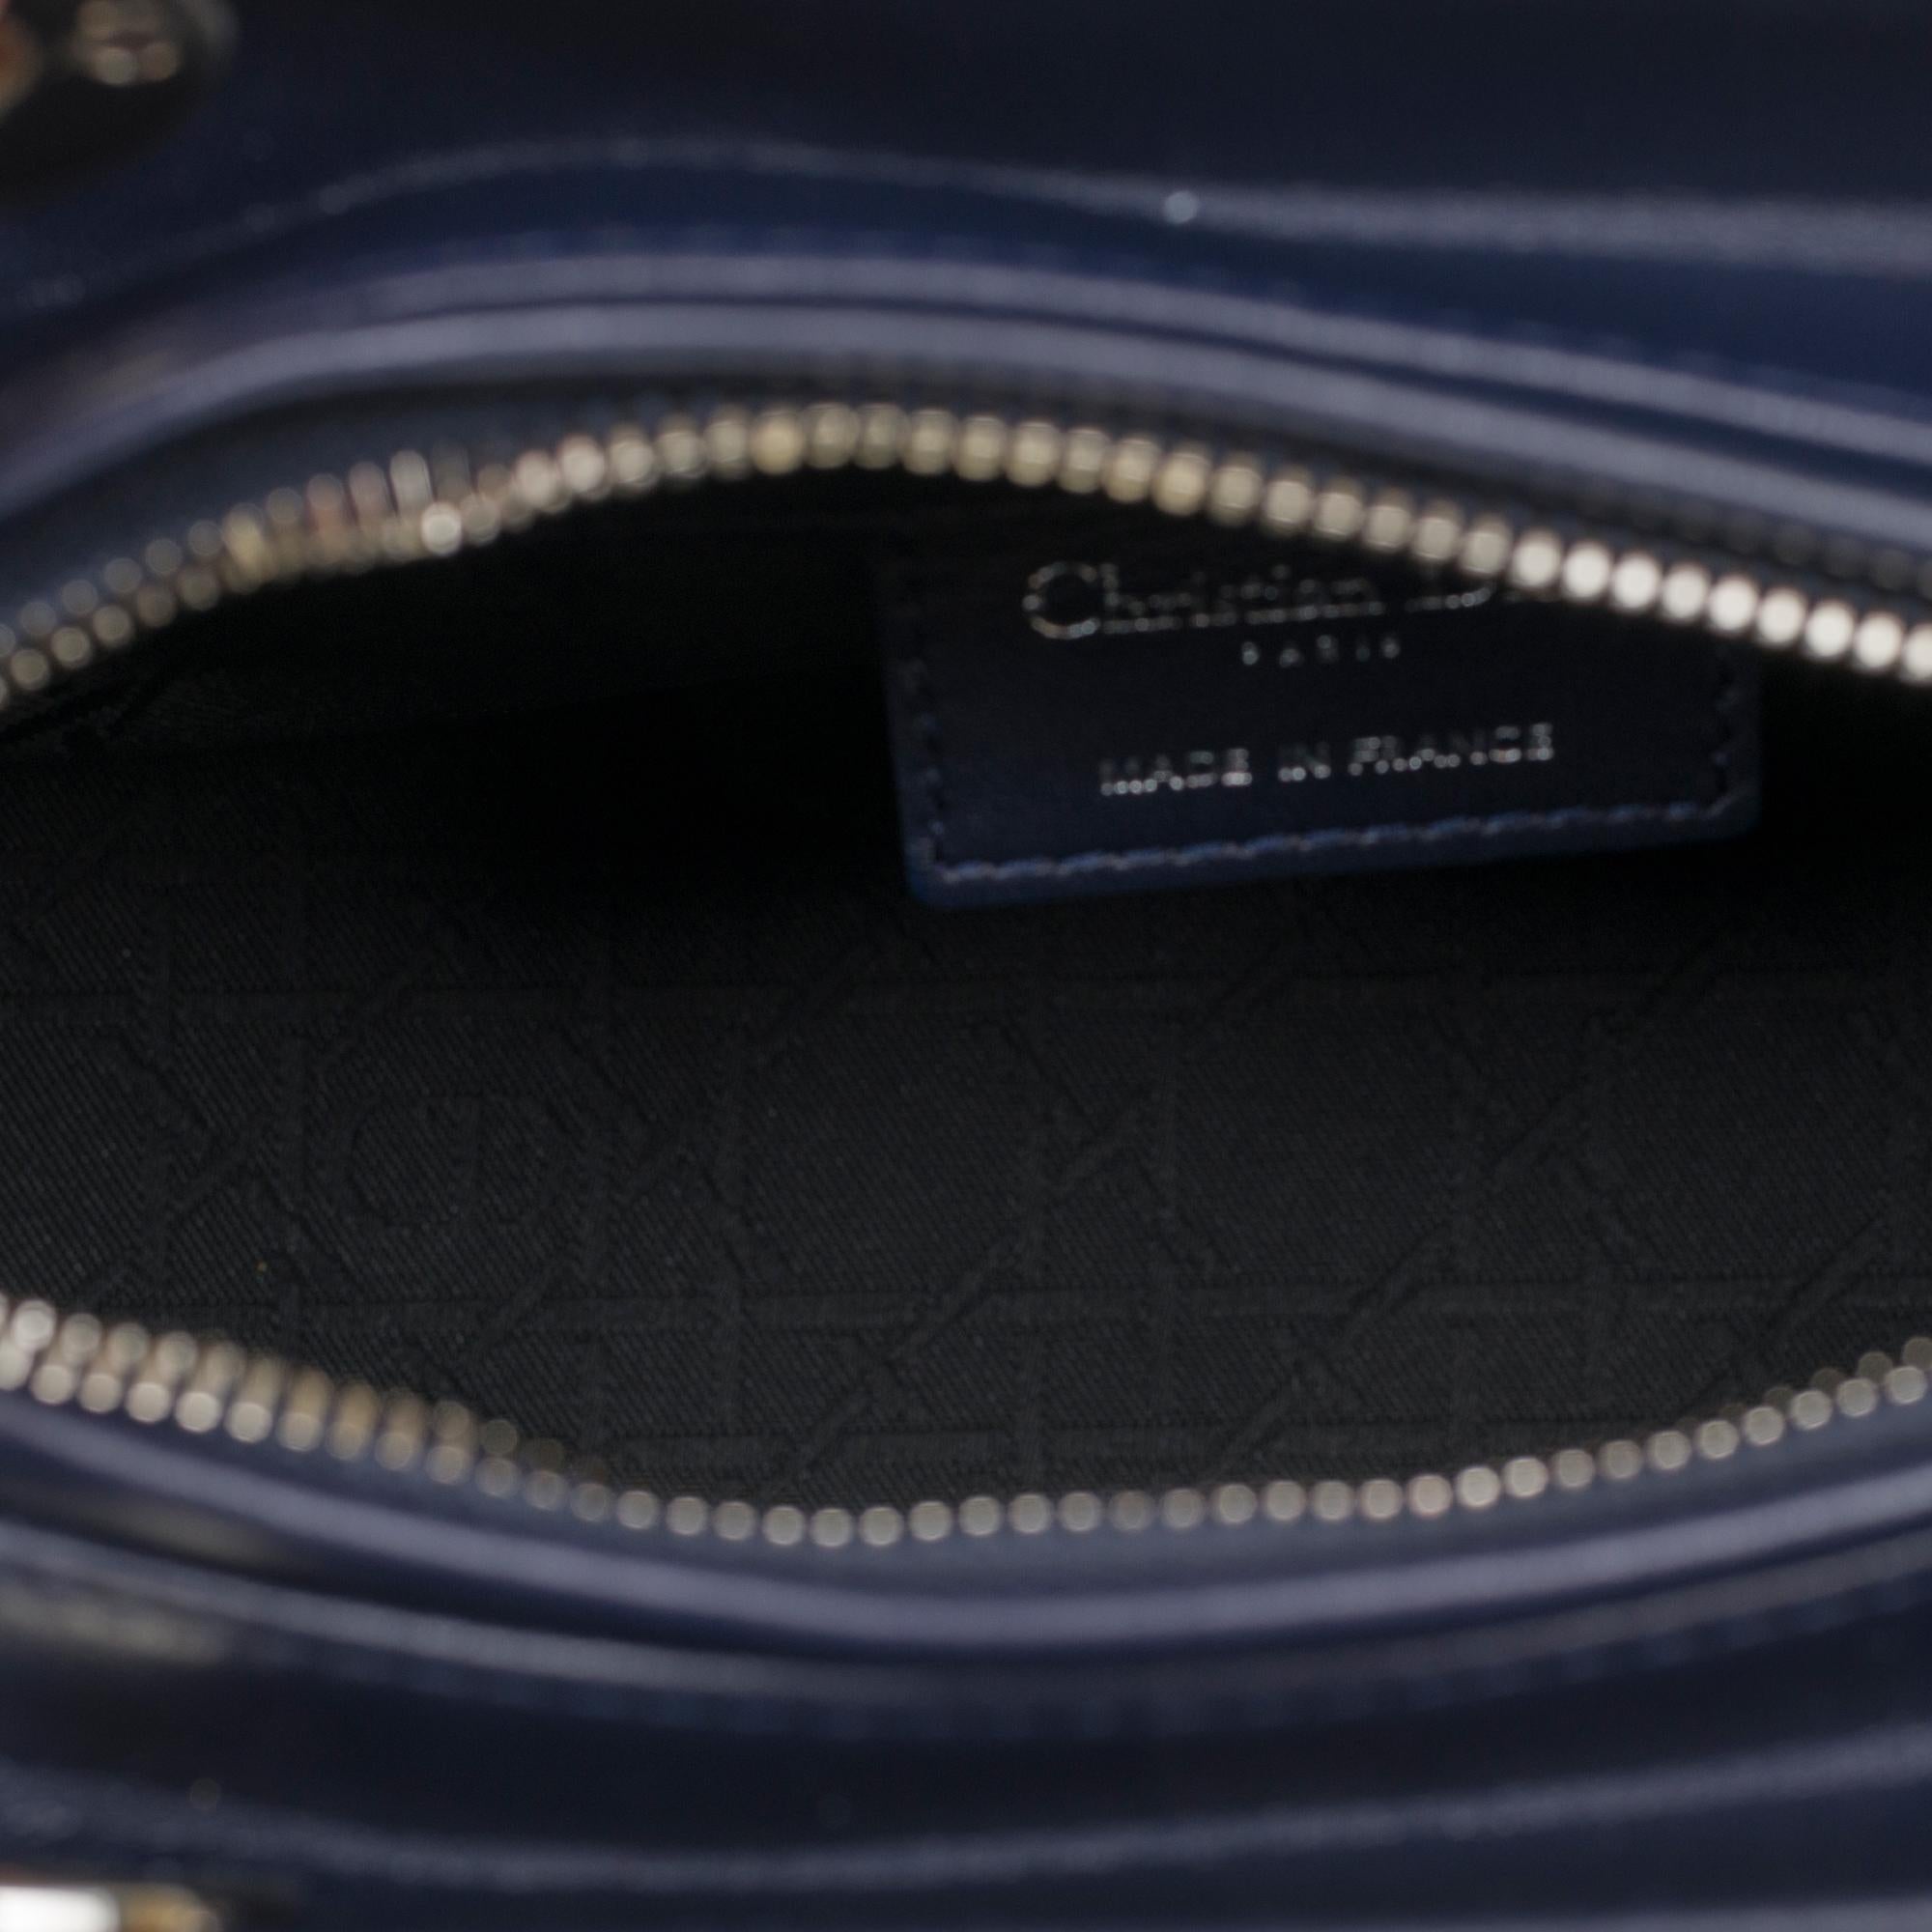  Christian Dior Lady Dior Medium size handbag in blue navy cannage leather, PHW 2